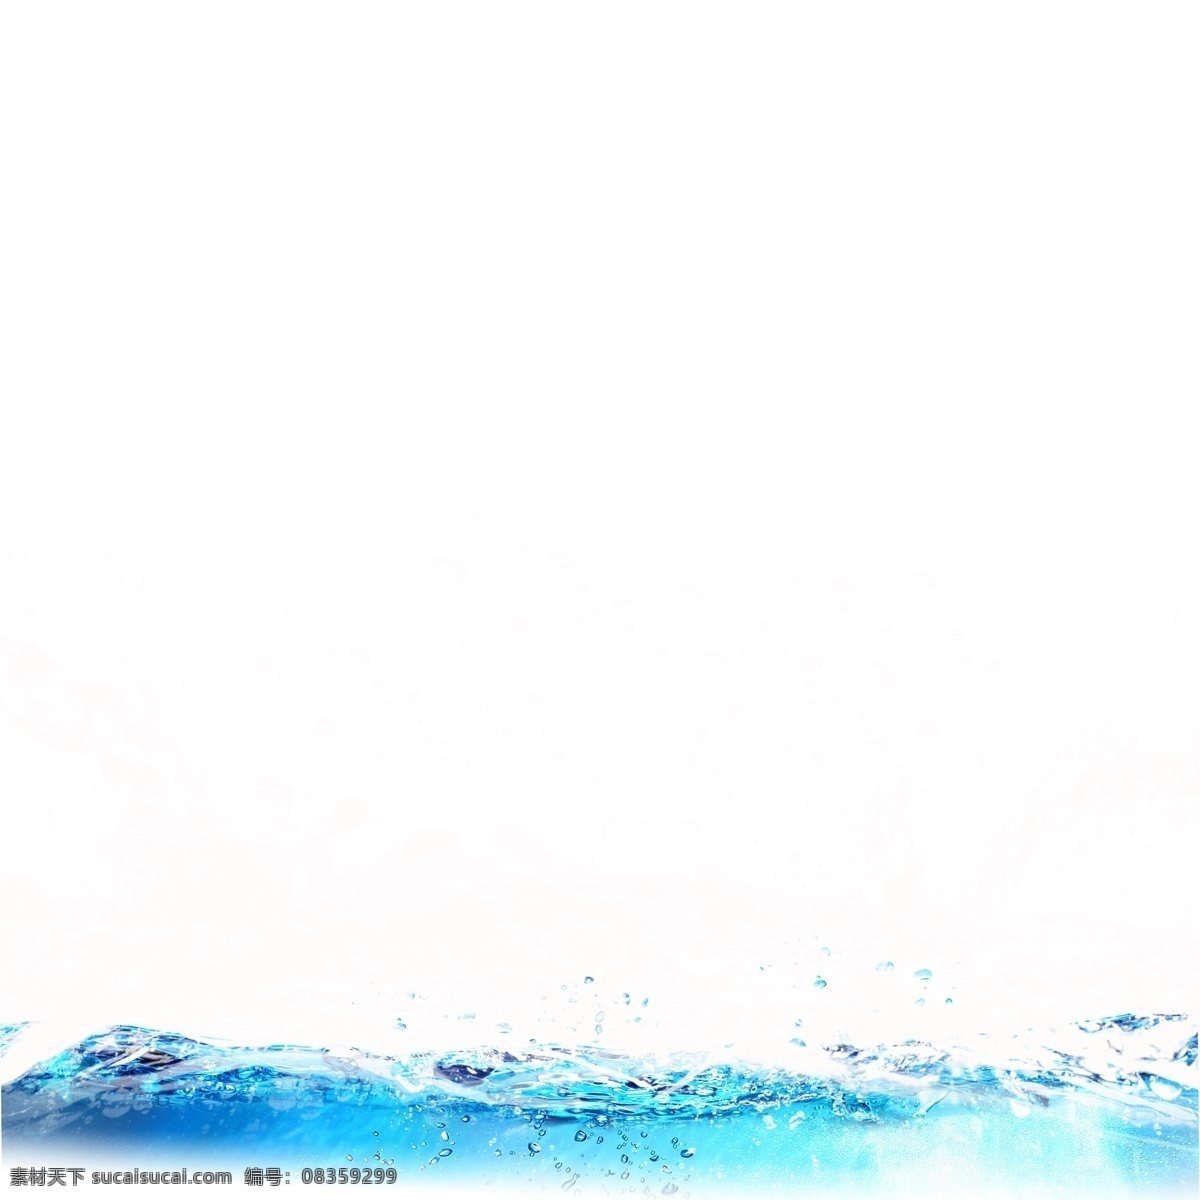 喷溅 水花 水滴 元素 动感 水珠 水波浪 蓝色水花 晶莹 透明